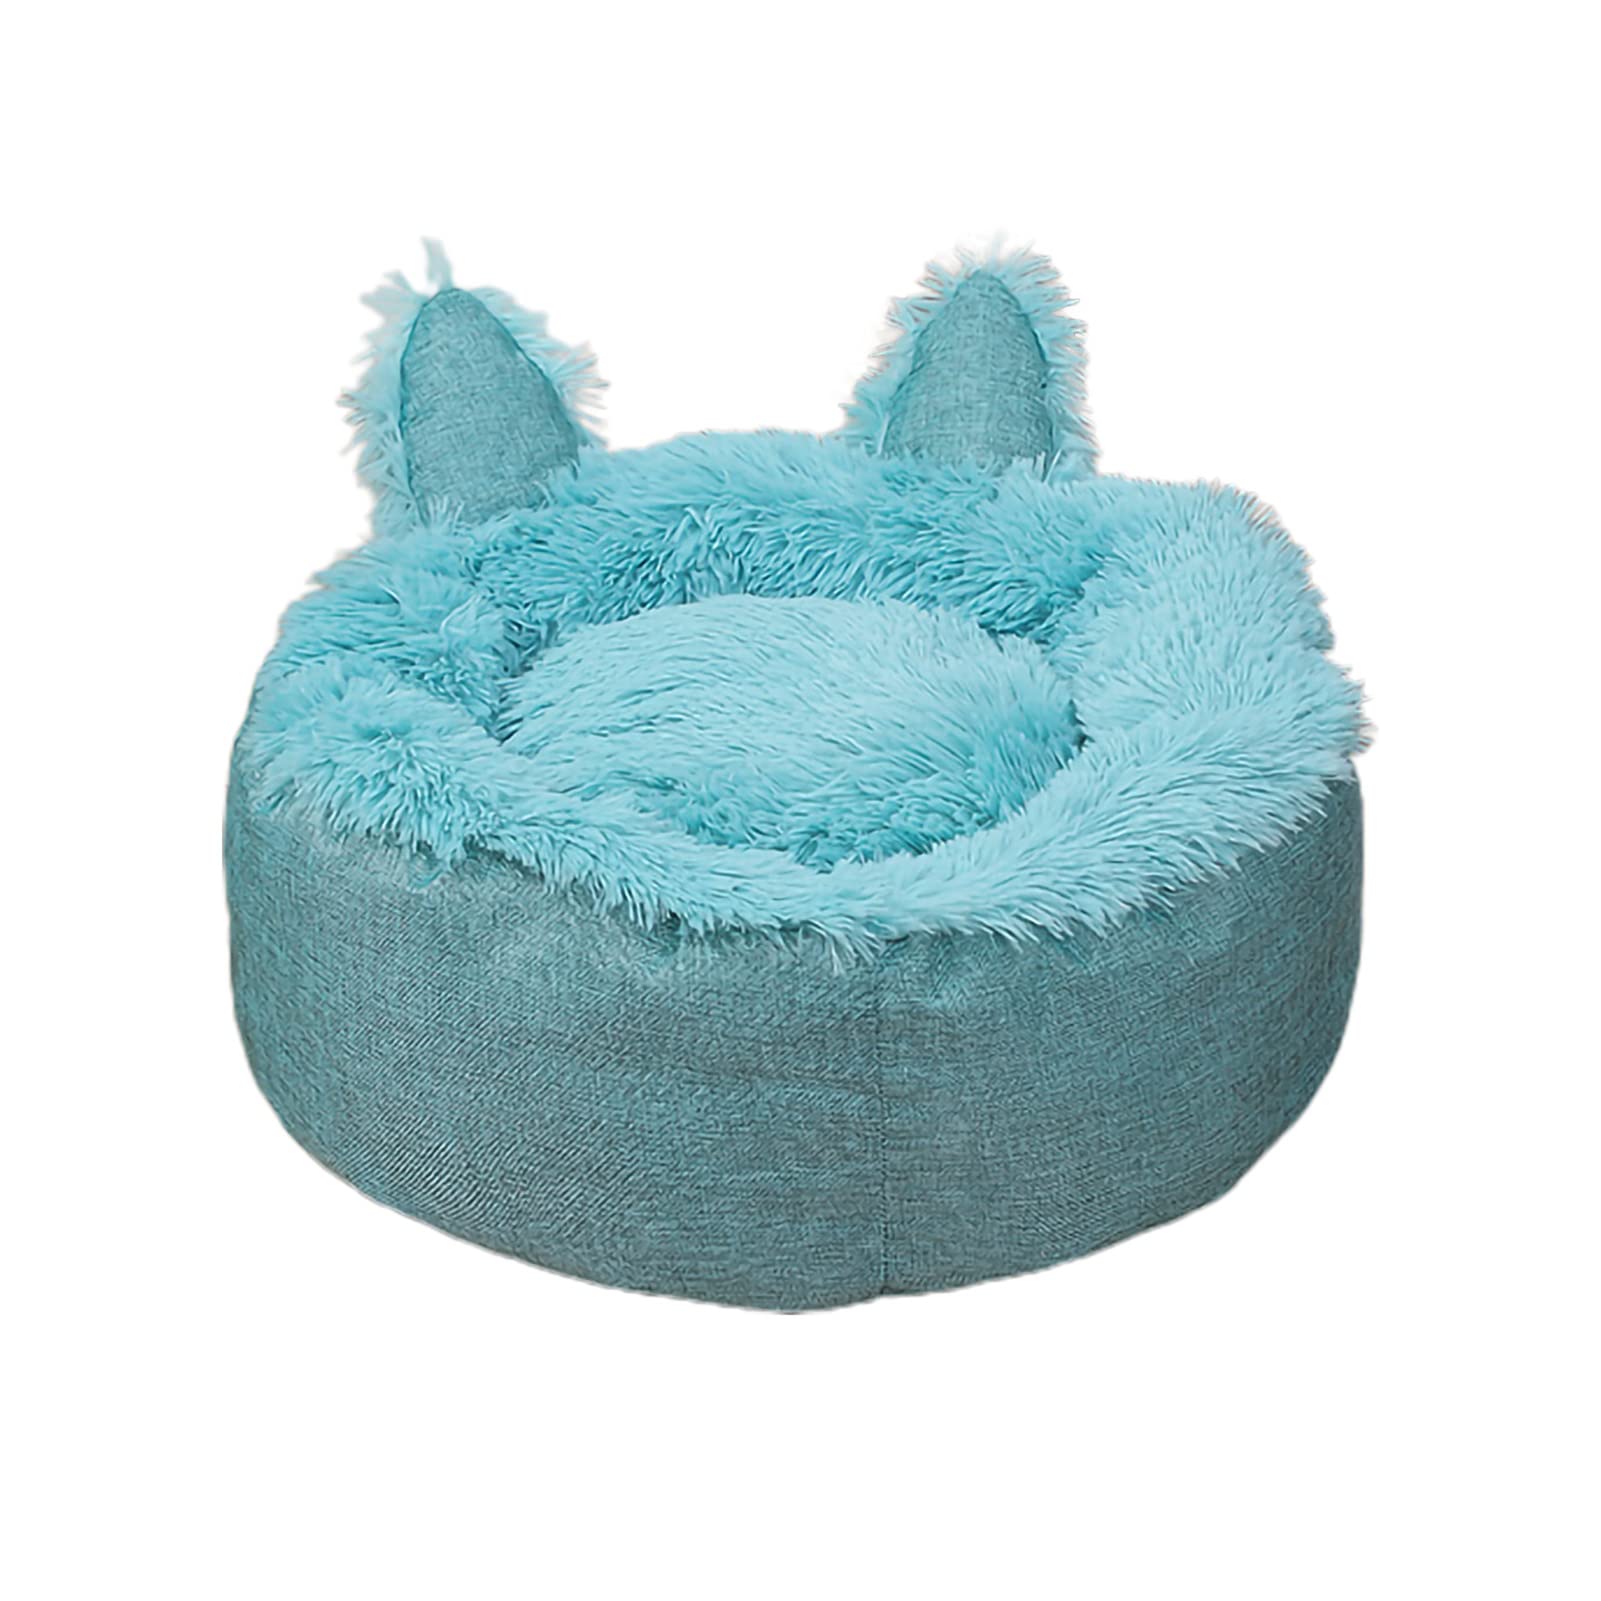 Suzanne Hundebett, Haustierbetten mit niedlichen Ohren, Katzenbett, warm, bequem, rund, 45 cm, Blau